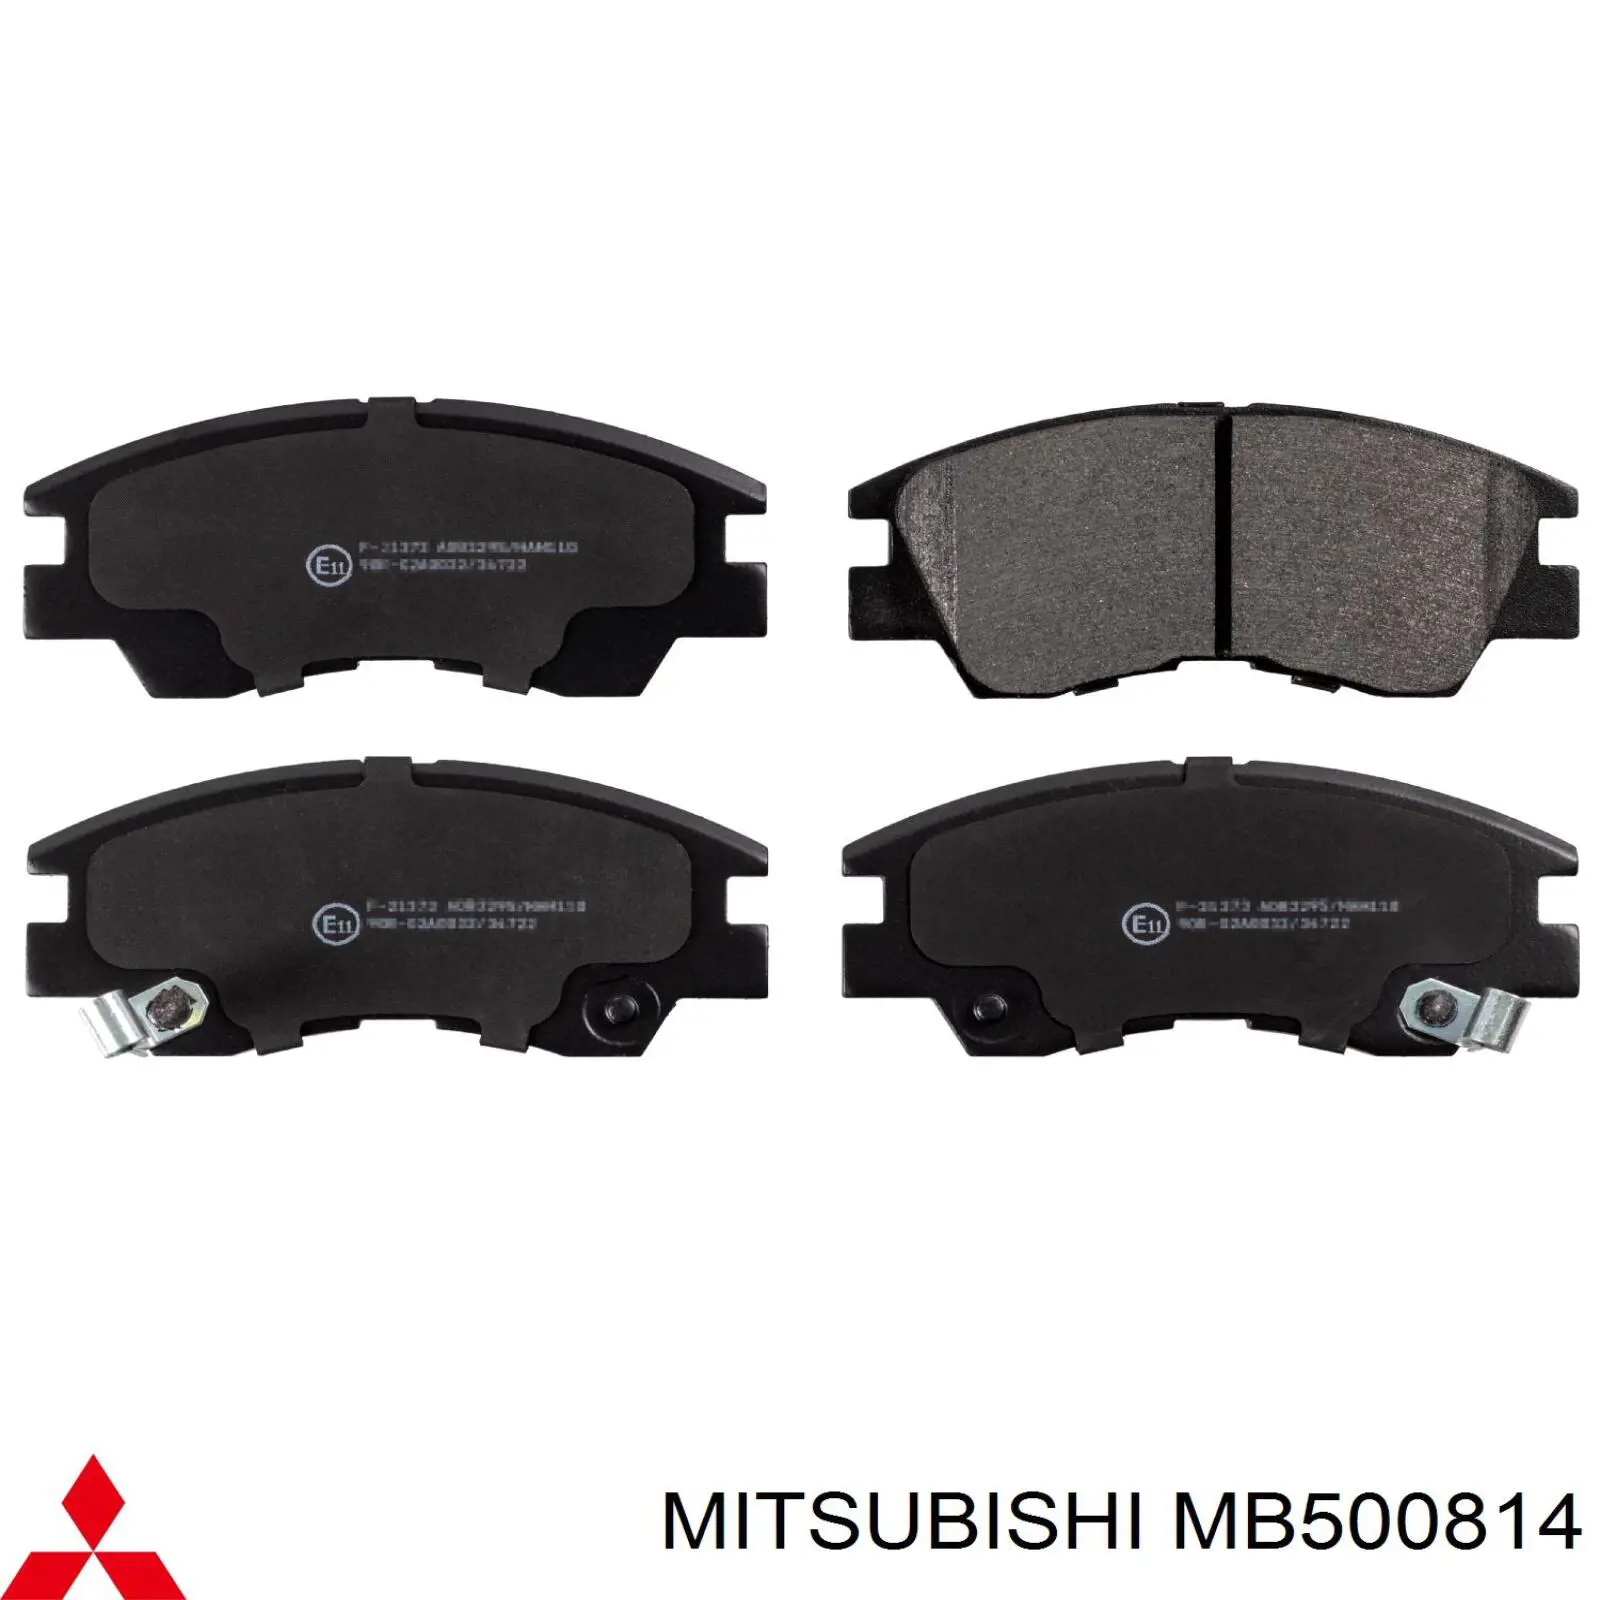 MB500814 Mitsubishi pastillas de freno delanteras